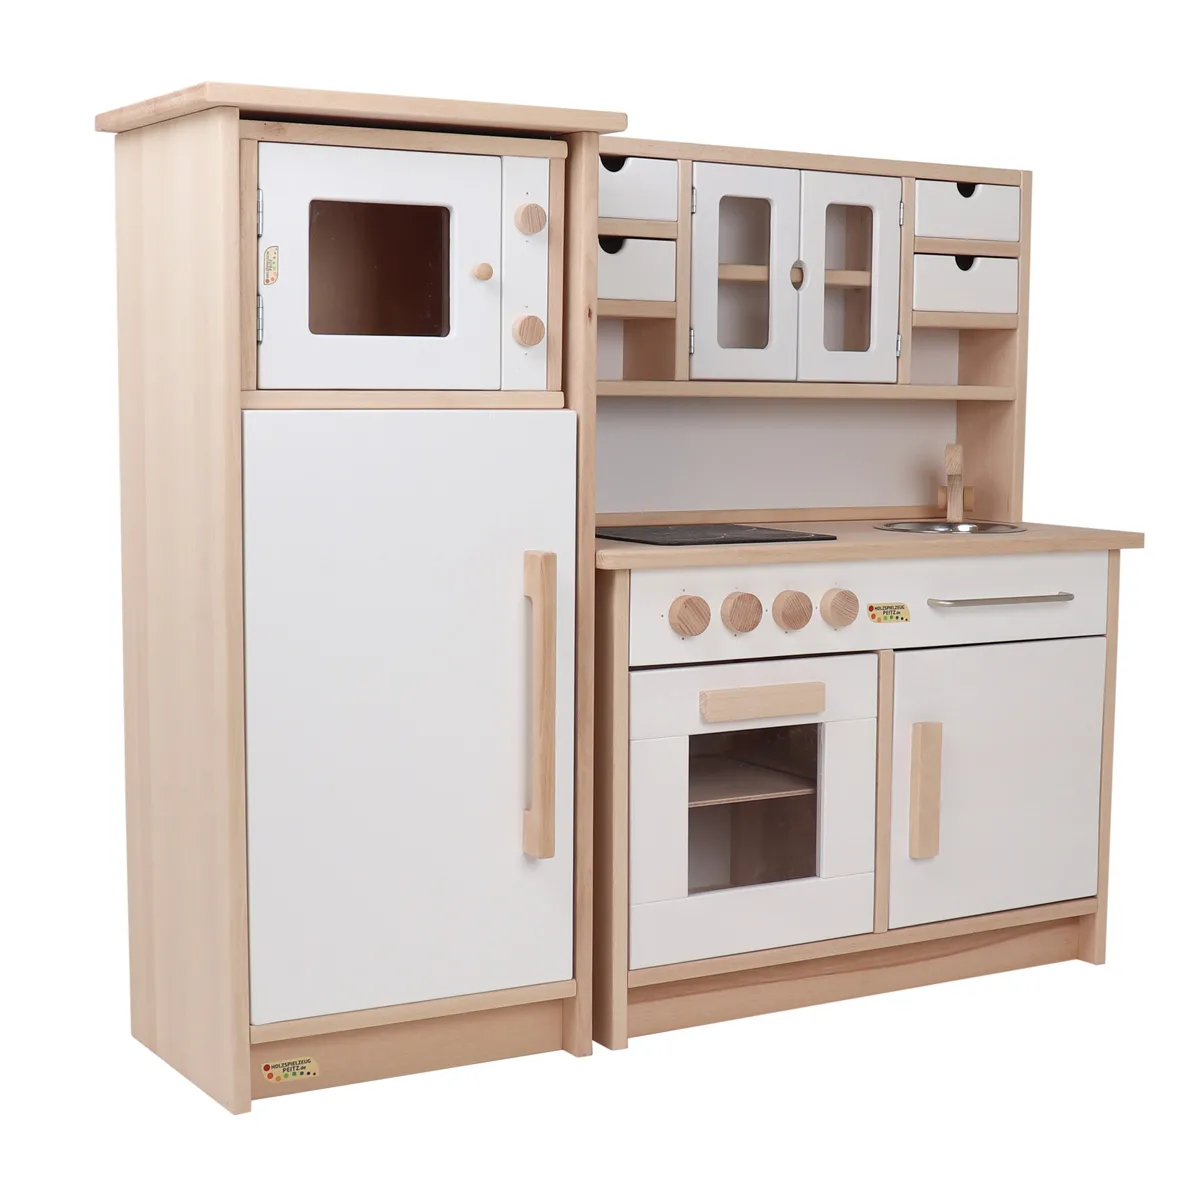 Kinder-Küchenzeile mit drei Einzelelementen: Waschmaschine, Schrank und Herd mit Backofen in Massivholz.